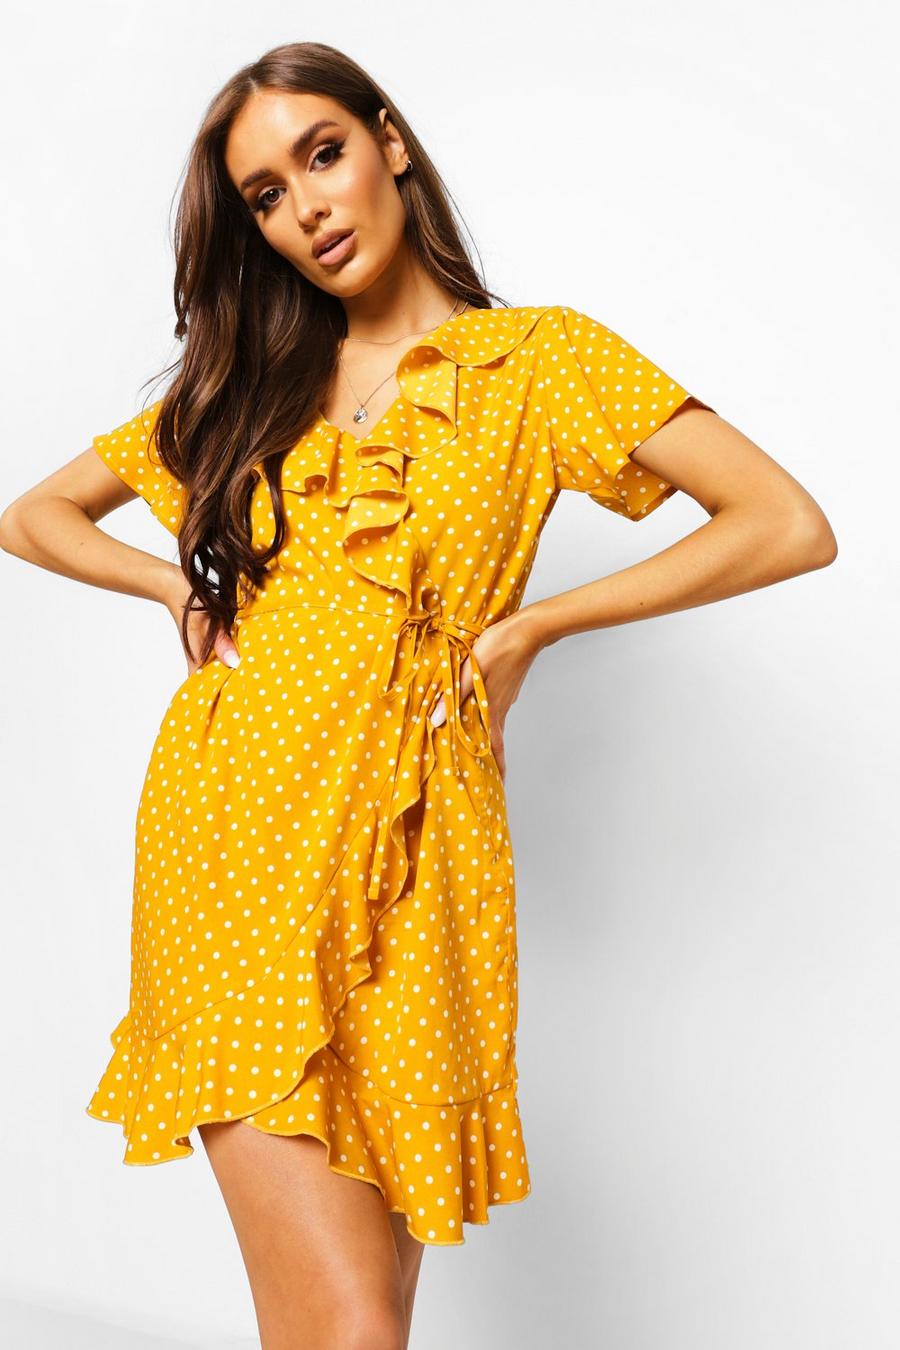 חרדל amarillo שמלת תה ארוגה עם מלמלה ומעטפת בחזית ונקודות פולקה